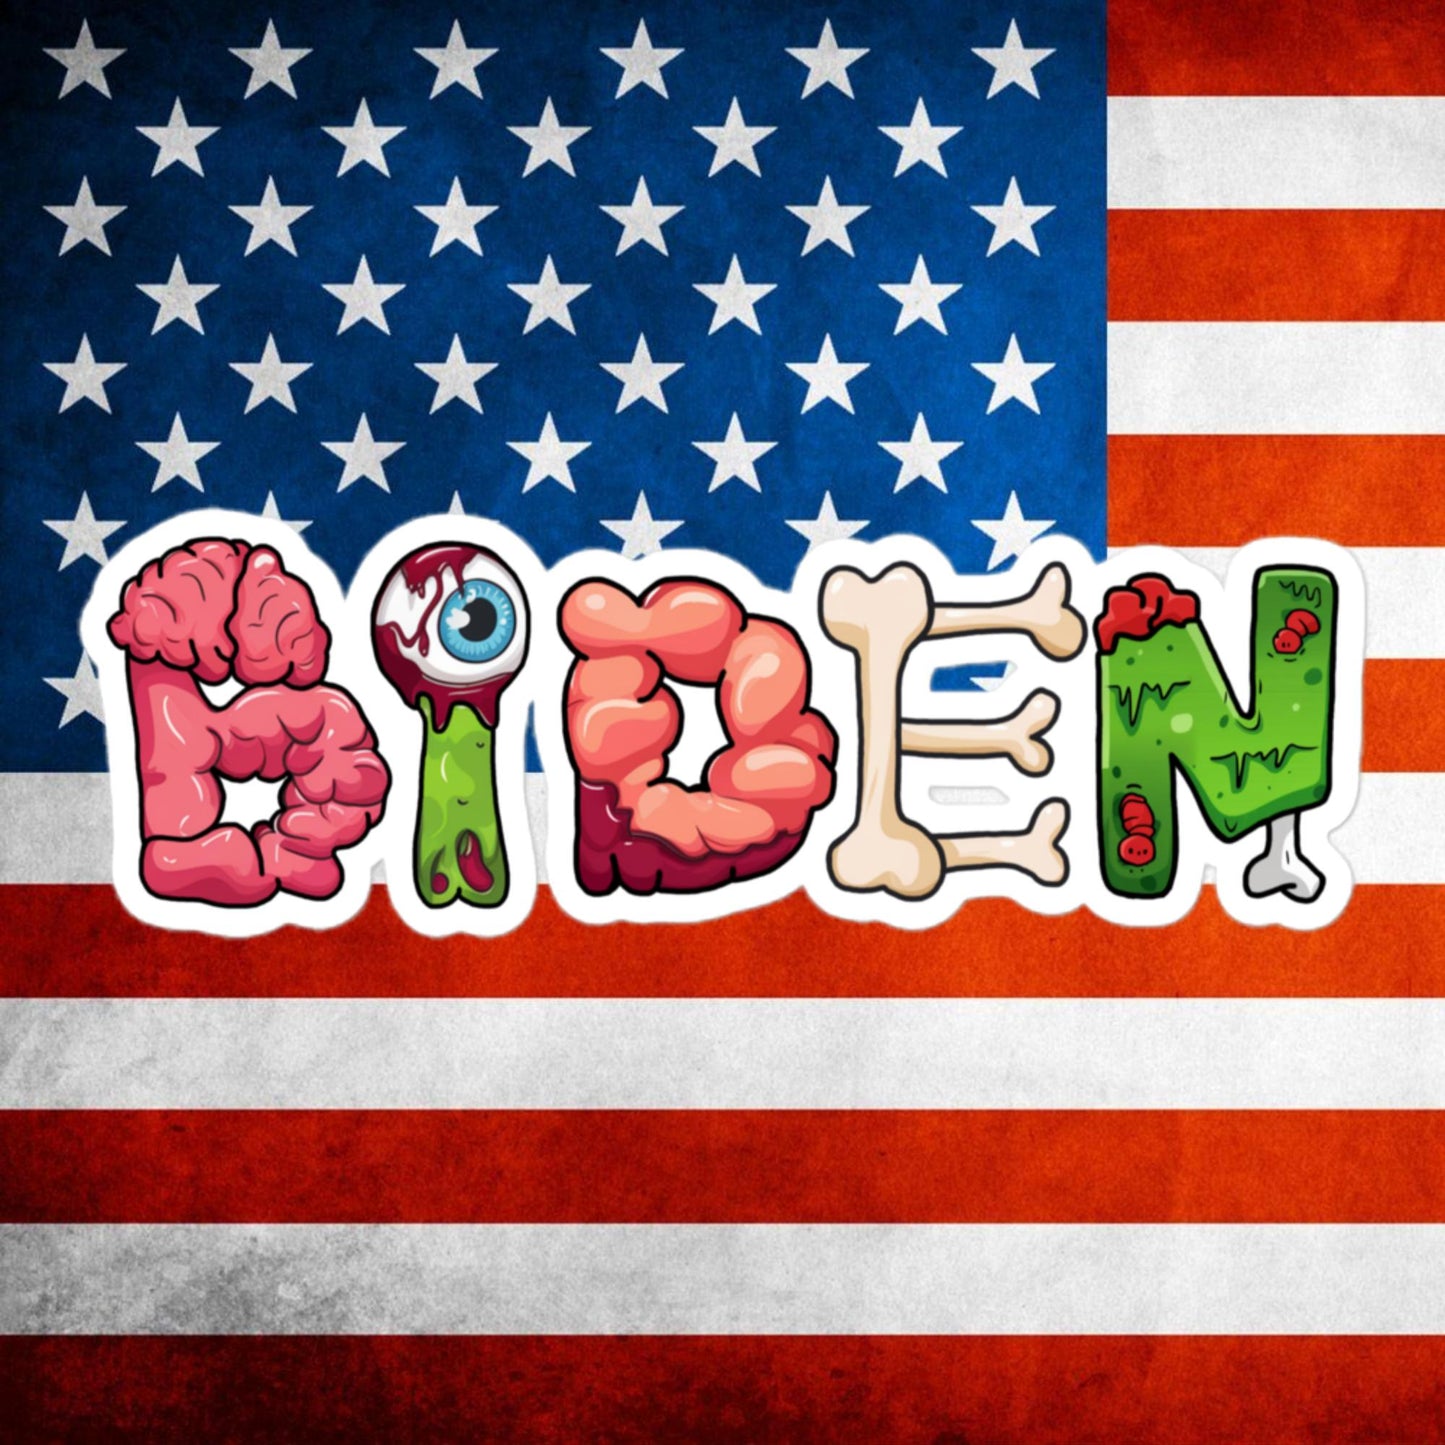 Old Joe Biden Zombie Walking Dead Funny Politics Bubble-free stickers Next Cult Brand